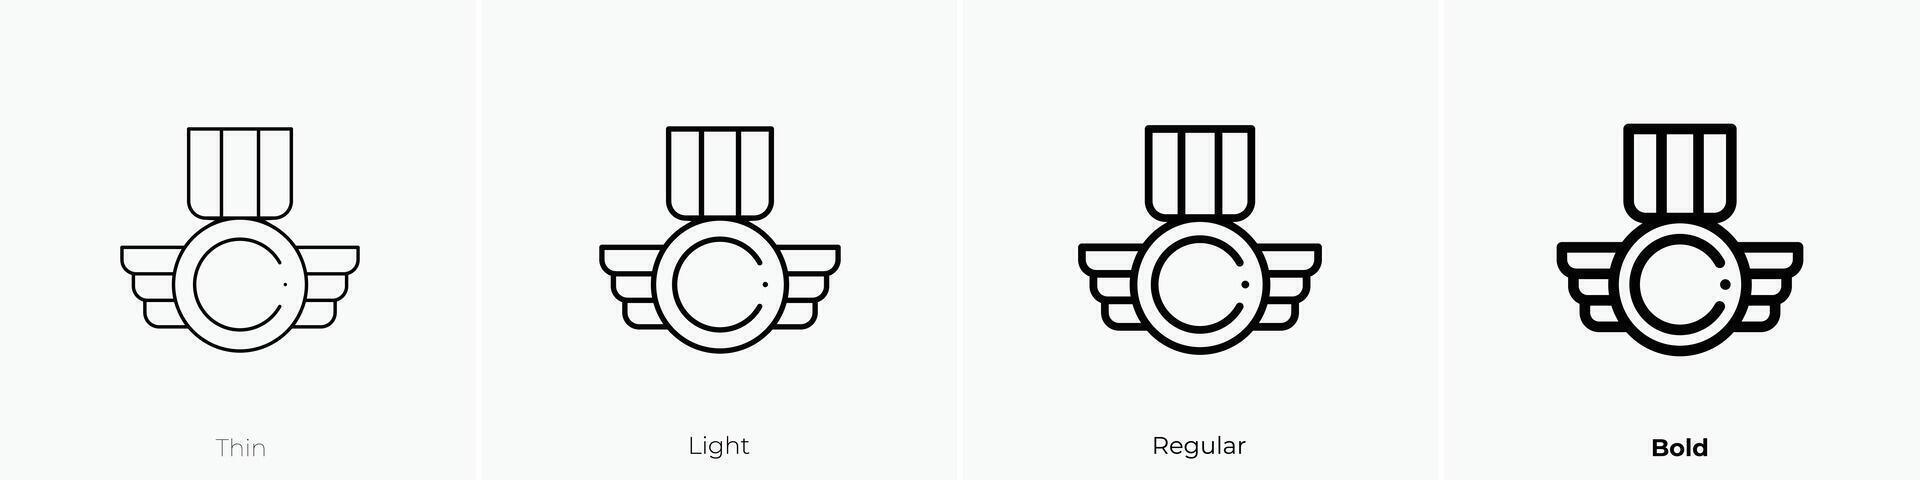 medalj ikon. tunn, ljus, regelbunden och djärv stil design isolerat på vit bakgrund vektor